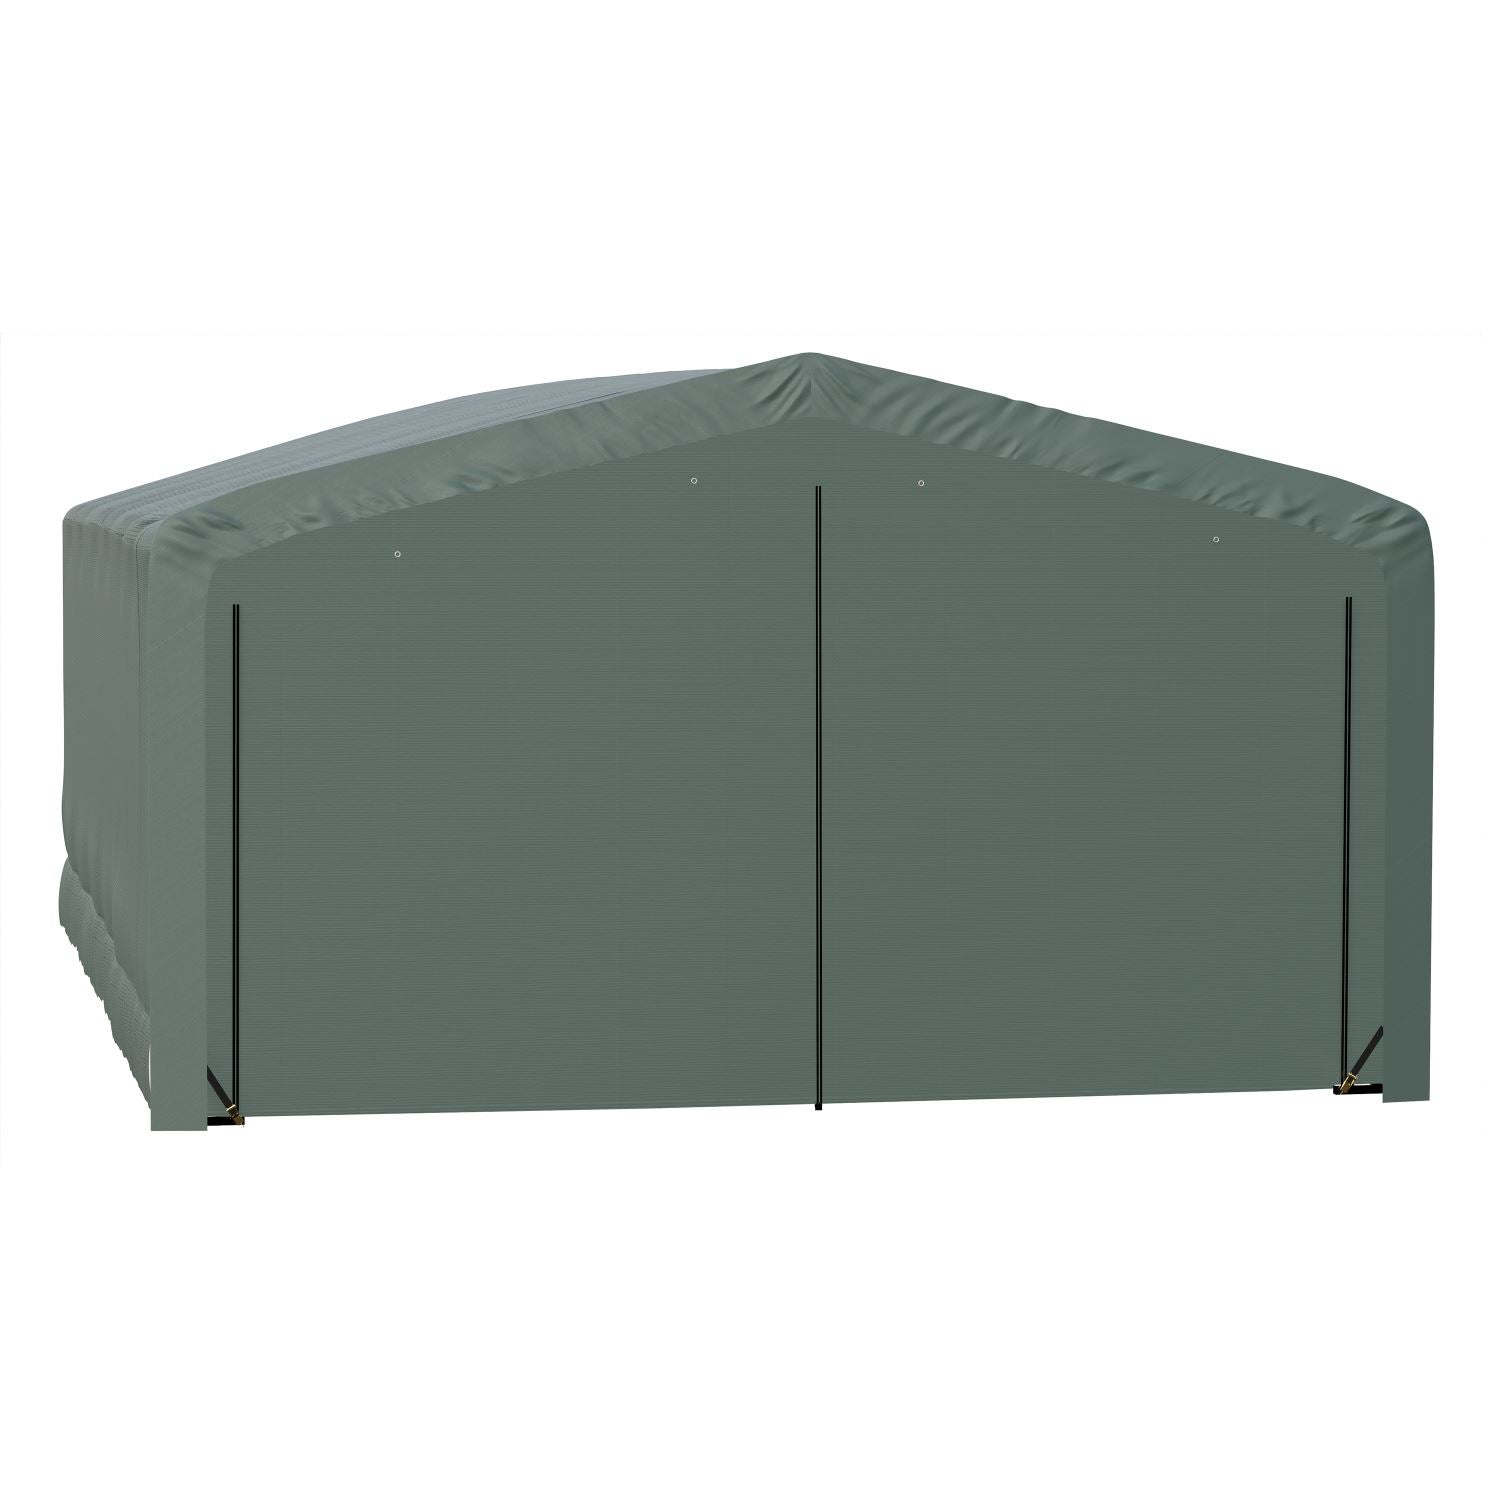 ShelterLogic Portable Garage ShelterLogic | ShelterTube Wind and Snow-Load Rated Garage 20x32x12 Green SQAADD0104C02003212